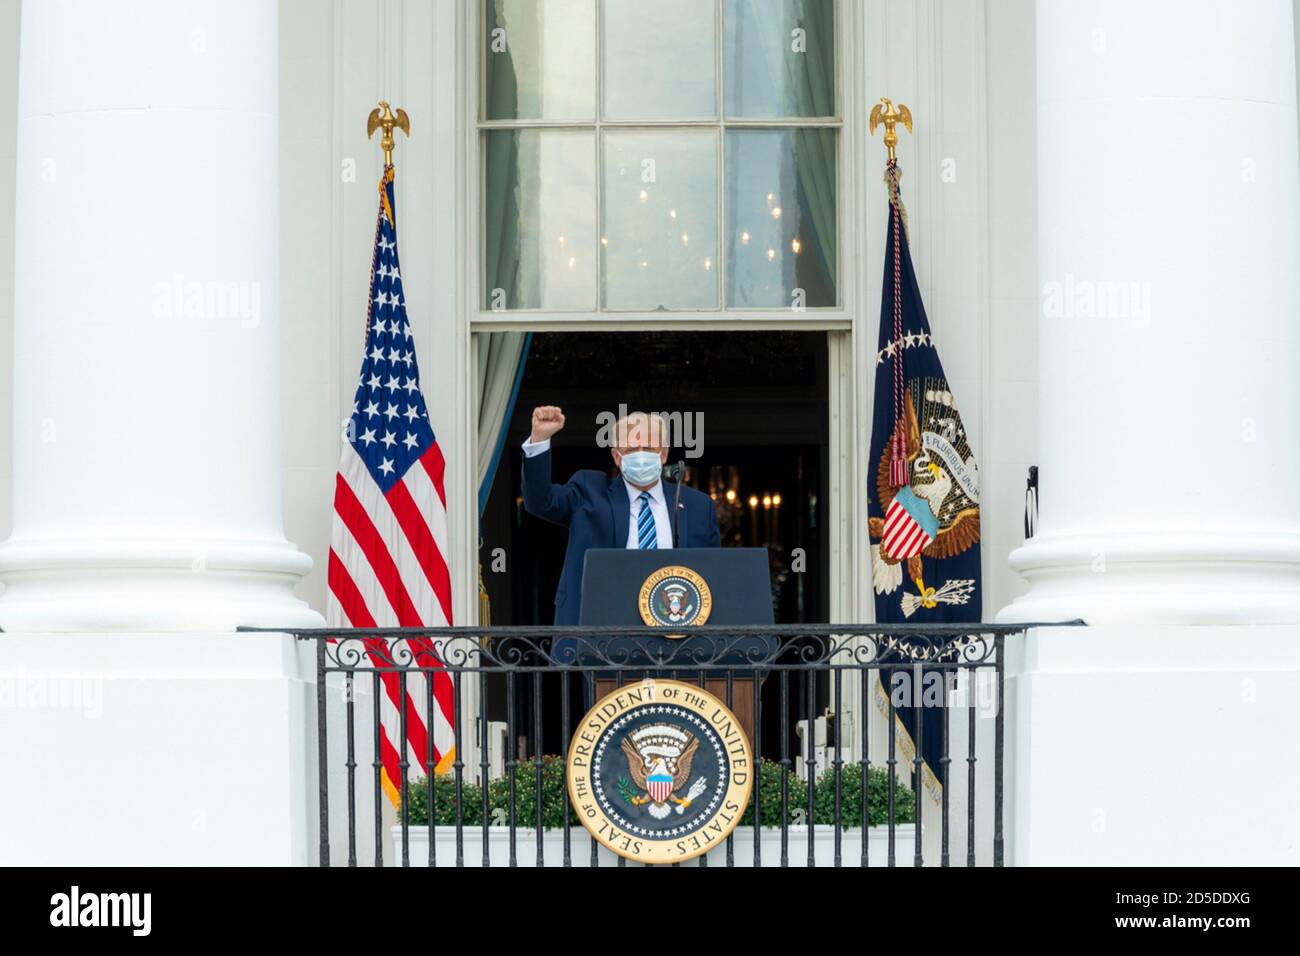 El presidente de Estados Unidos, Donald Trump, se dirige a un mitin de campaña temática de ley y orden desde el Blue Room Balcony de la Casa Blanca el 10 de octubre de 2020 en Washington, DC. Foto de stock